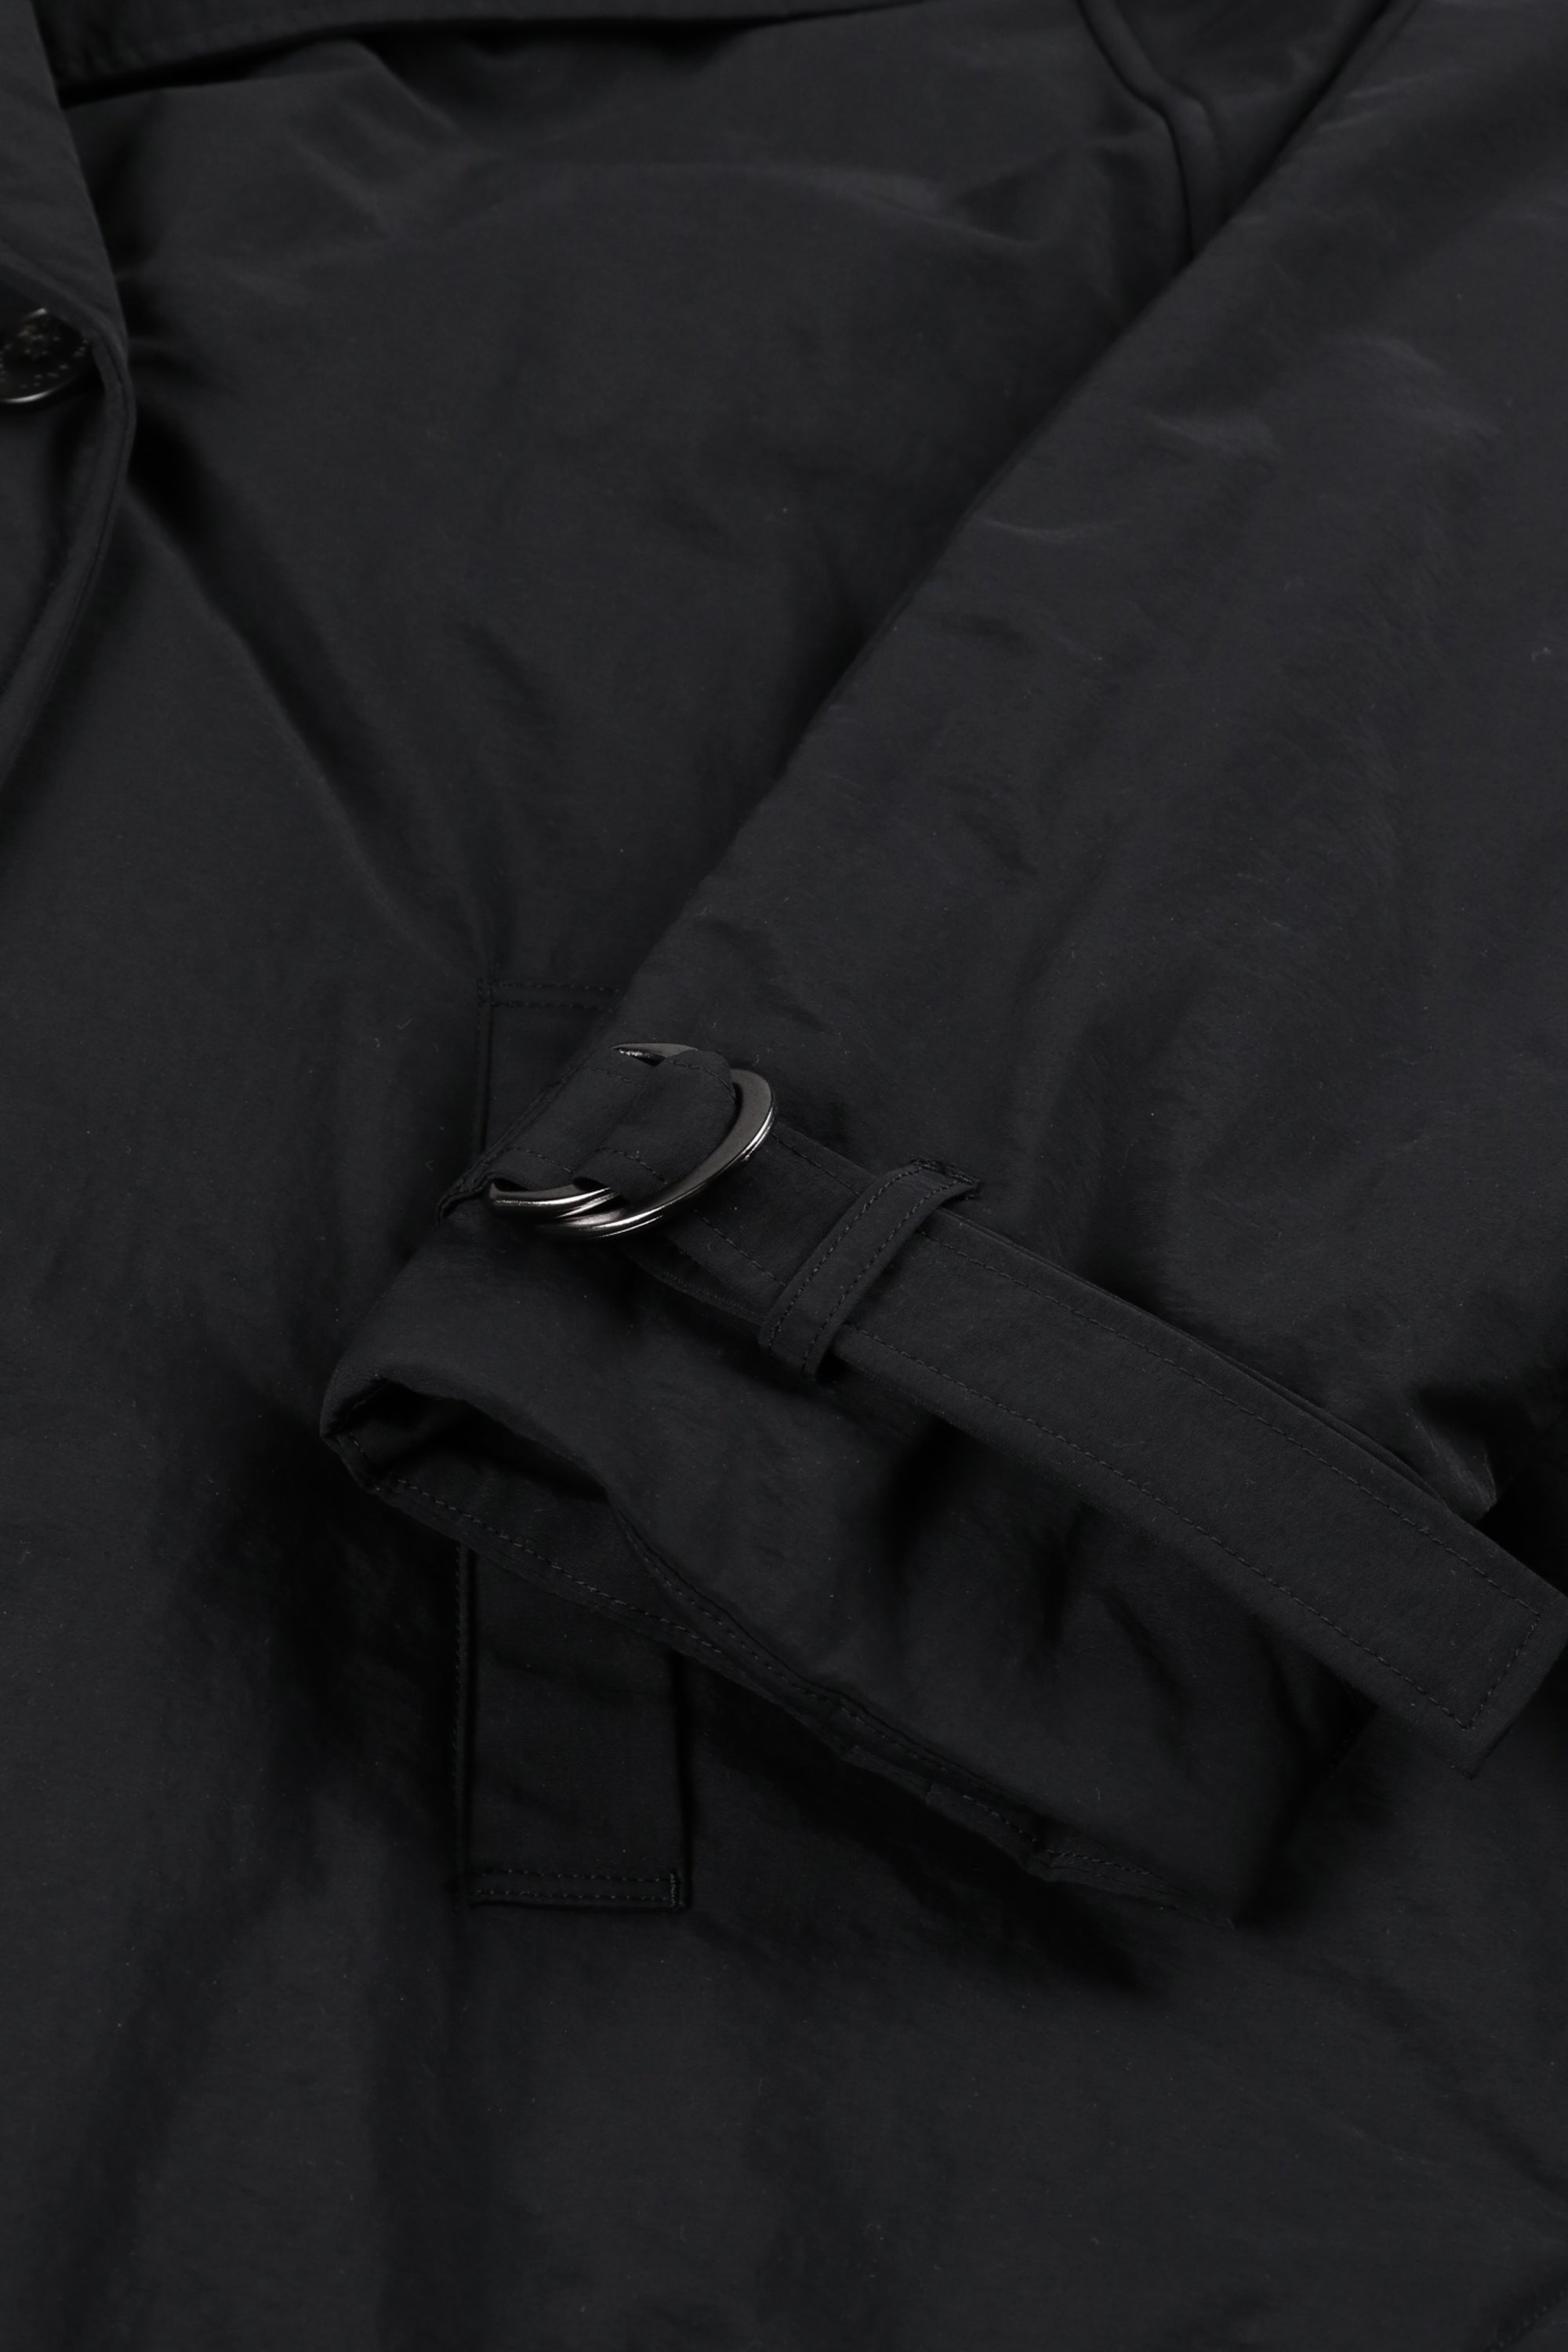 Poncho coat (black)-Unisex 